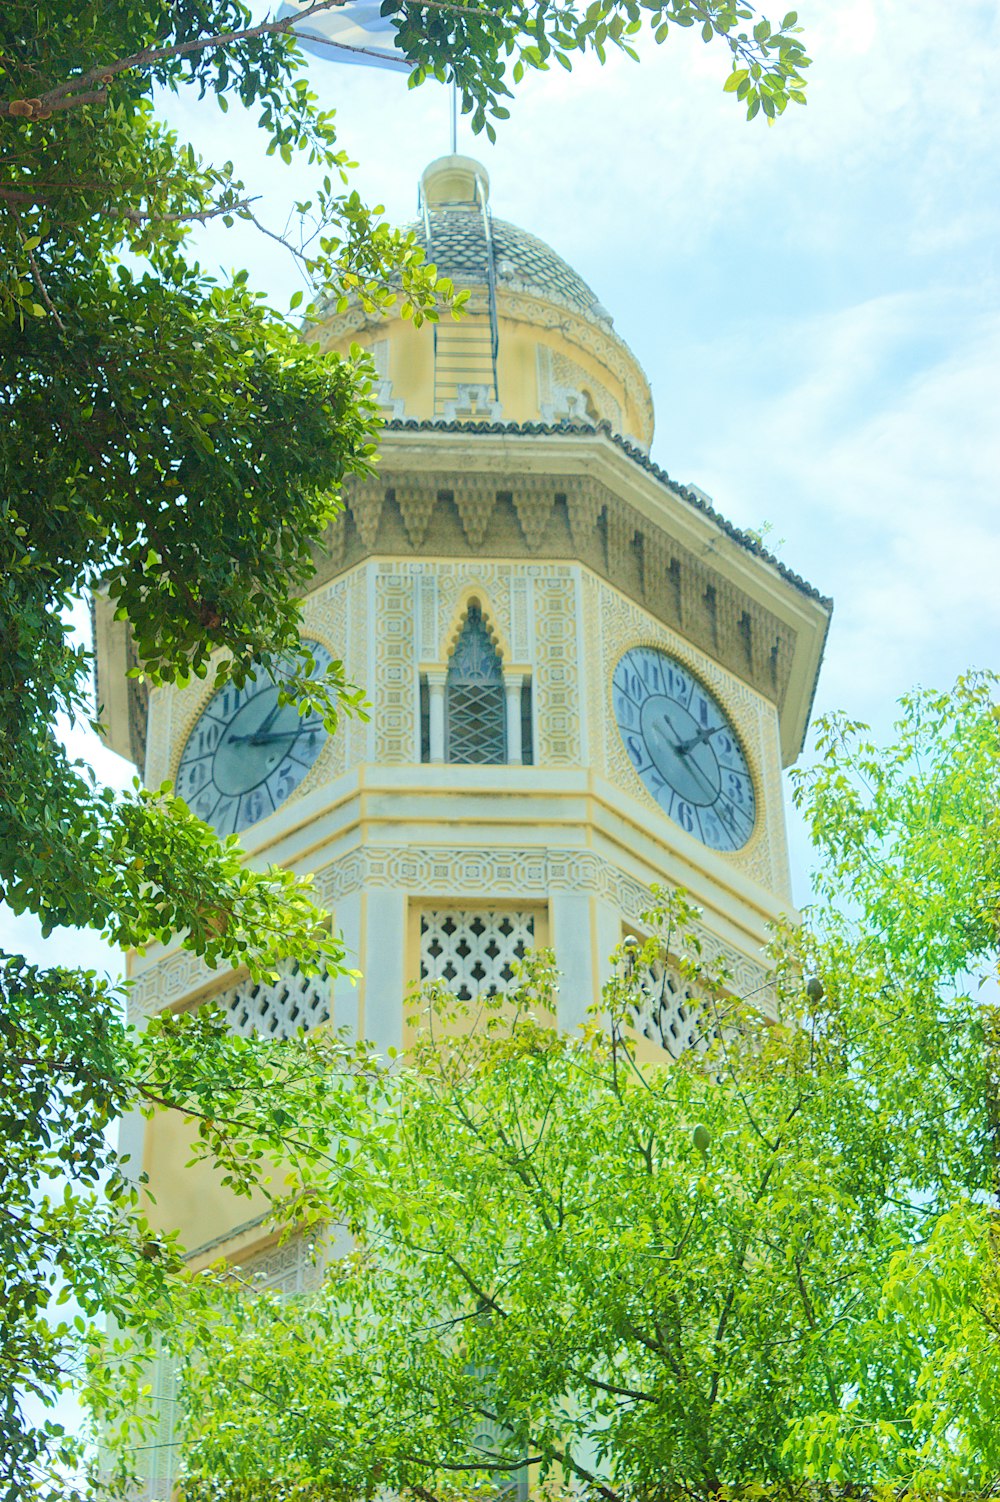 una alta torre del reloj con dos relojes en cada uno de sus lados